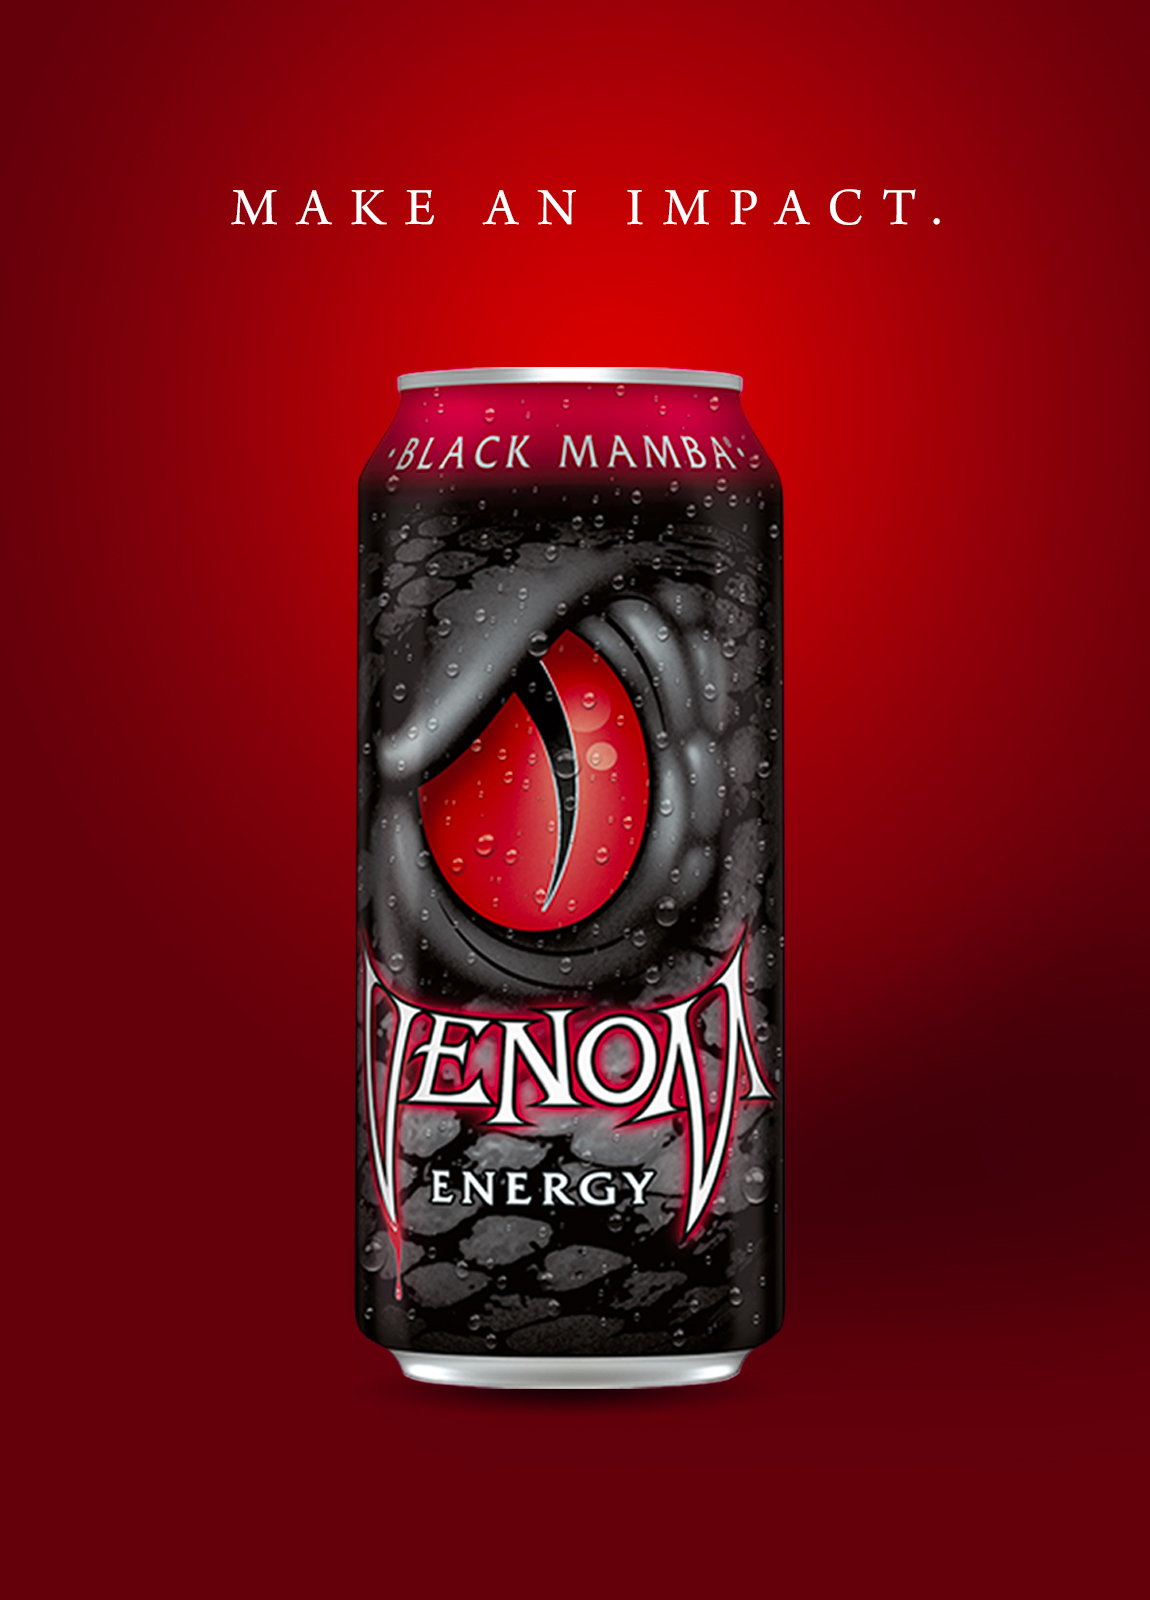 Venom Energy